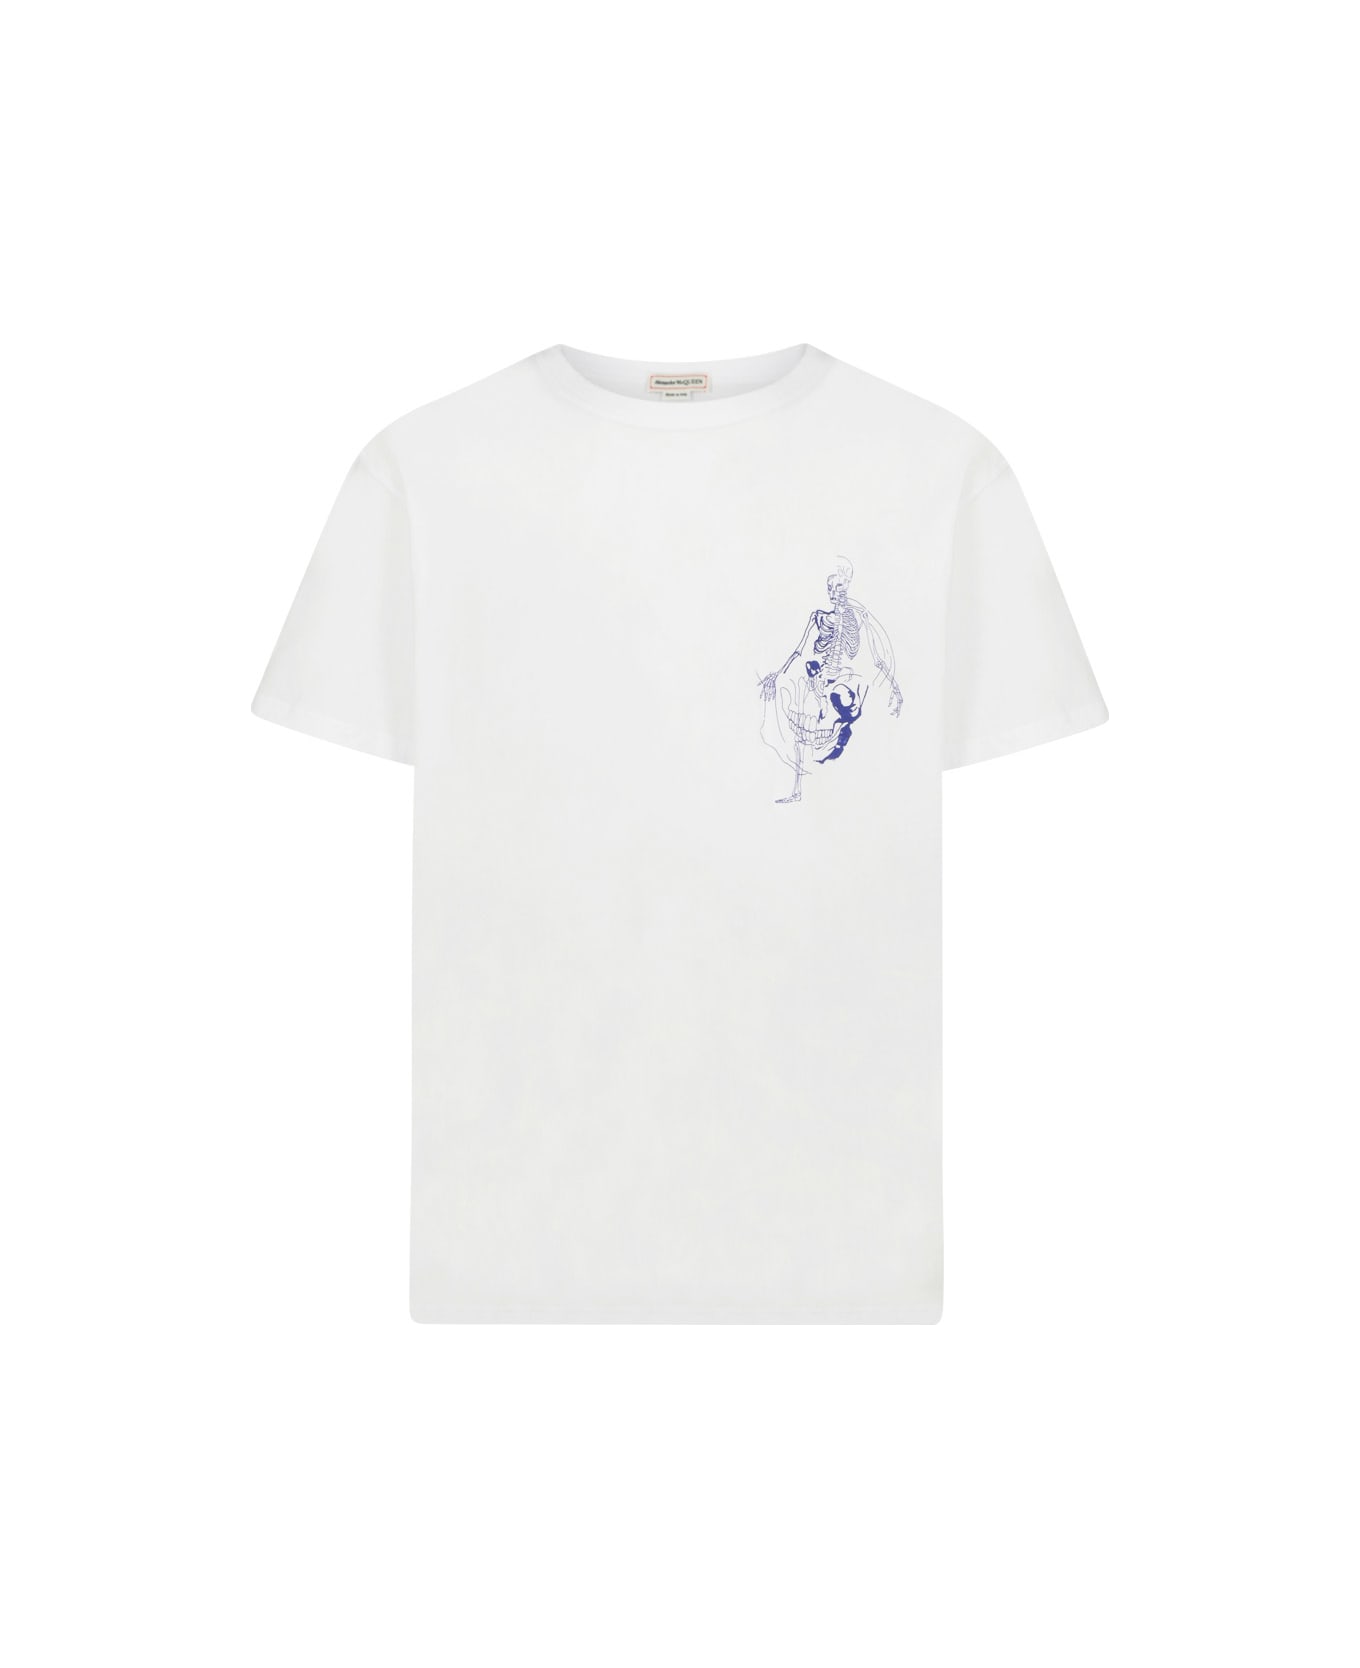 Alexander McQueen T-shirt - White/blue